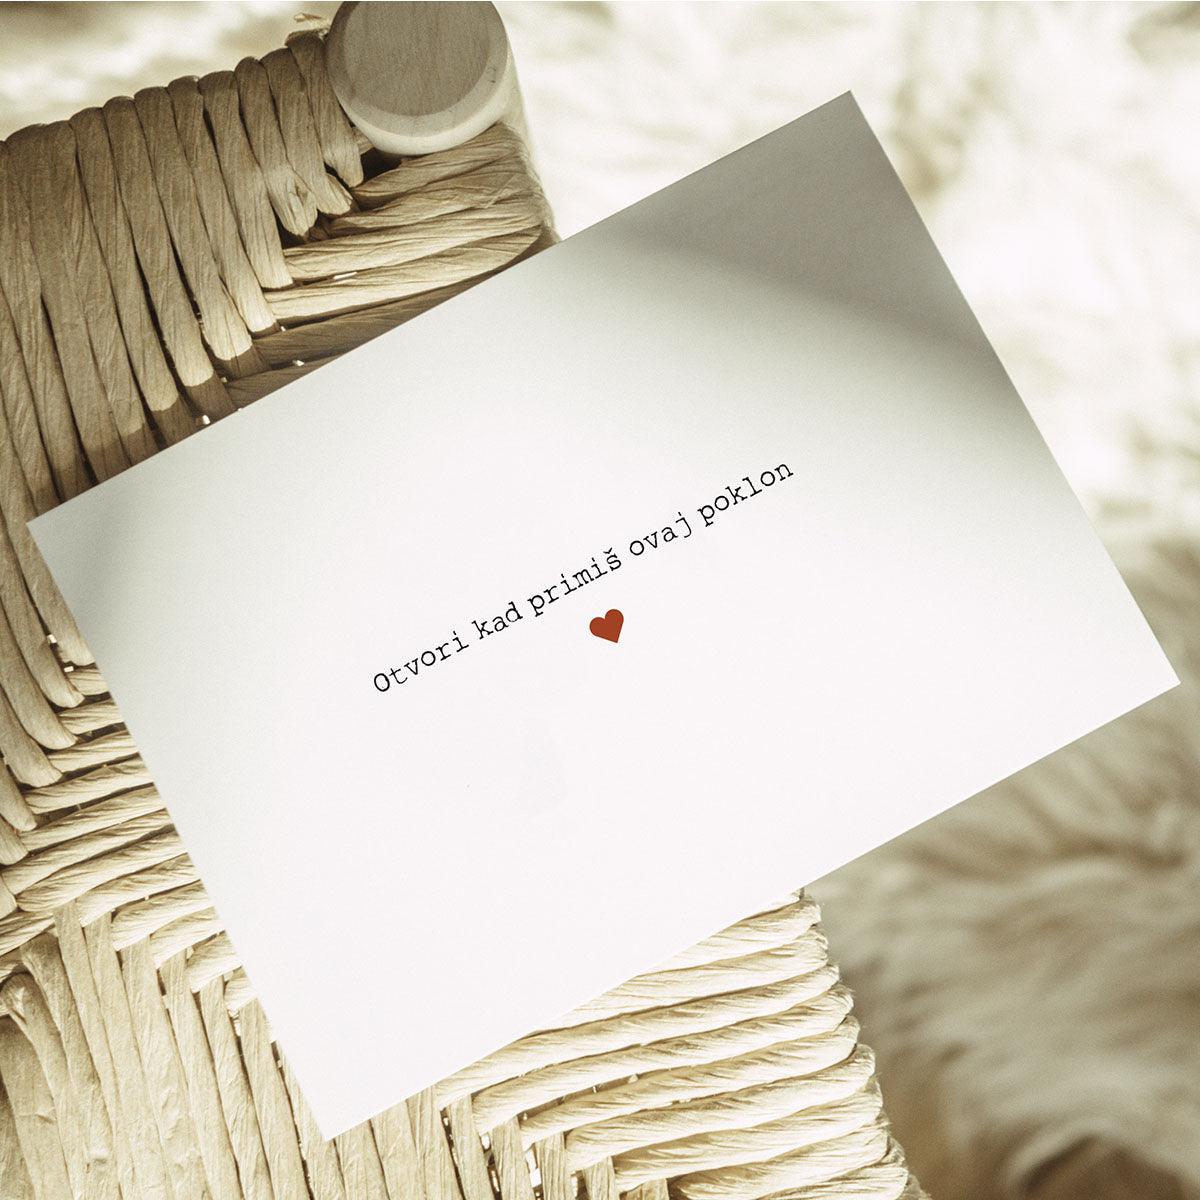 Otvori kad kartice za poklon, kuverta na kojoj piše Otvori kad primiš ovaj poklon i srce